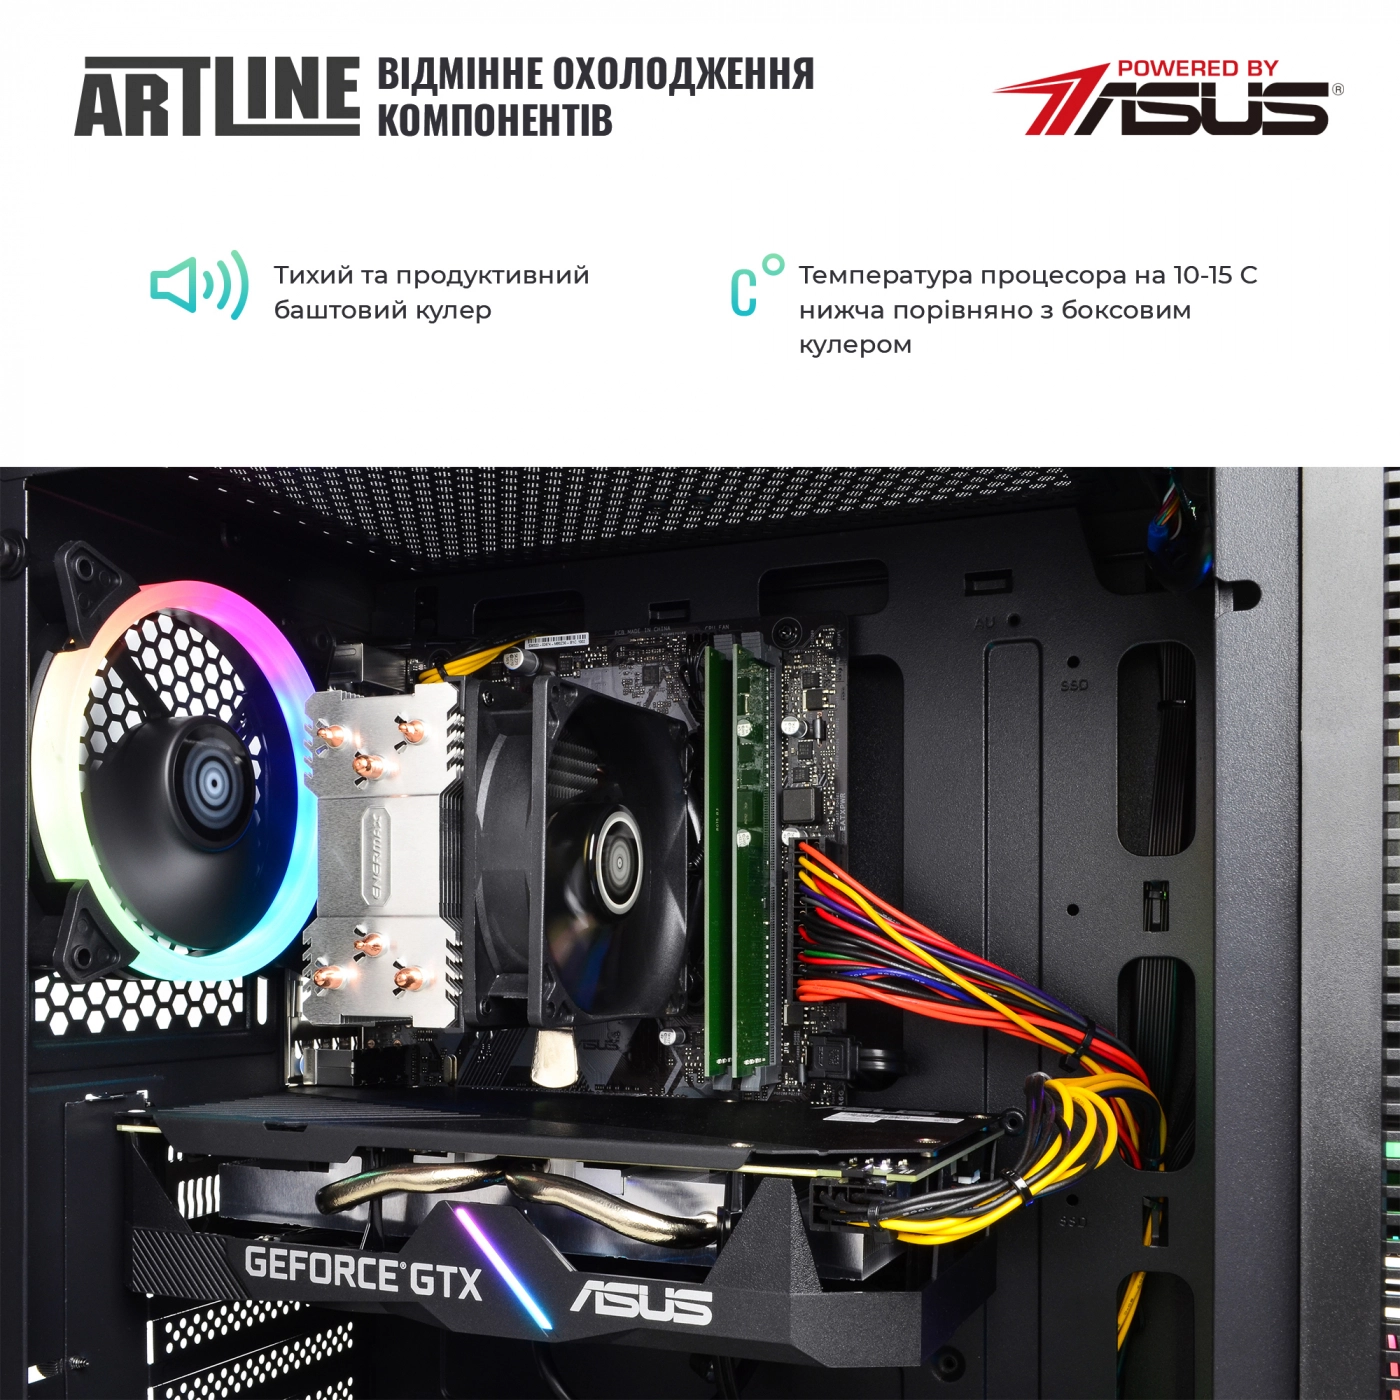 Купить Компьютер ARTLINE Gaming X53v23 - фото 3